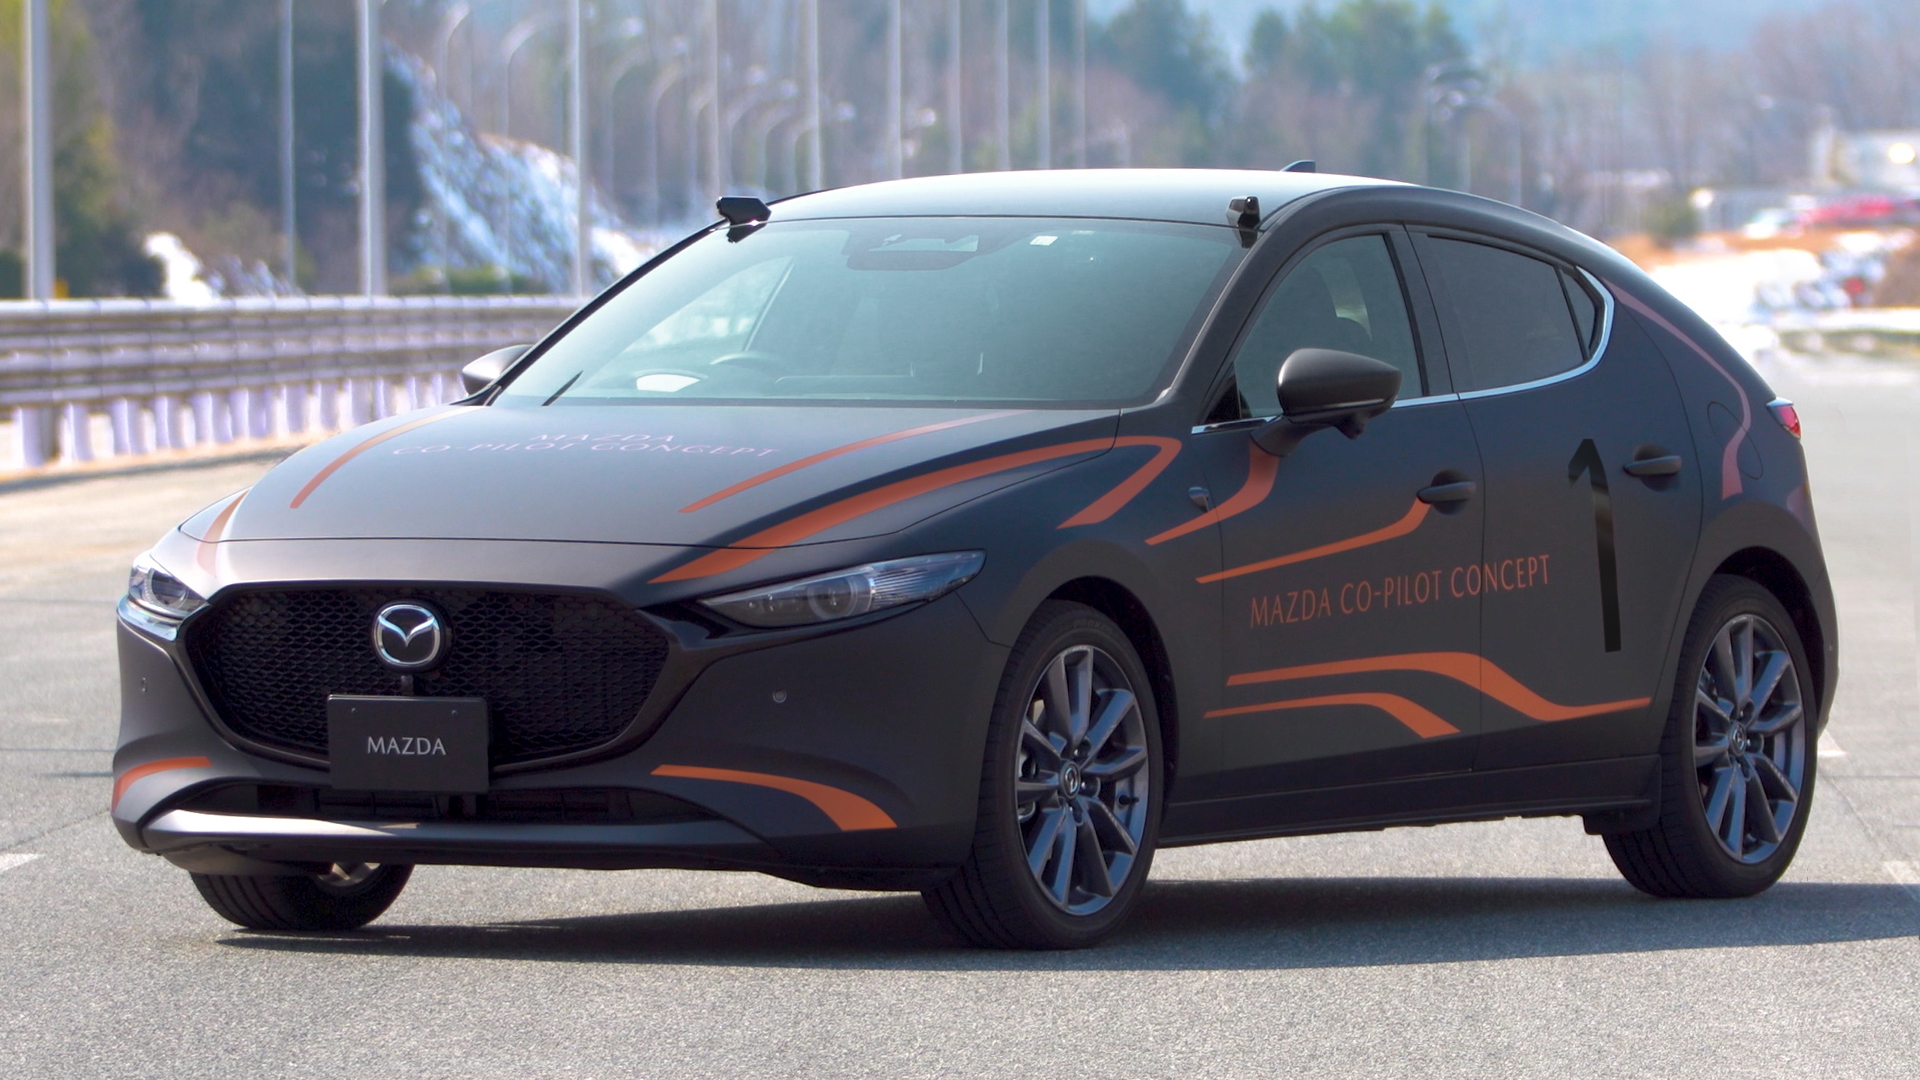 打瞌睡自動停路邊！Mazda Co-Pilot Concept 新安全科技 2022 年起導入